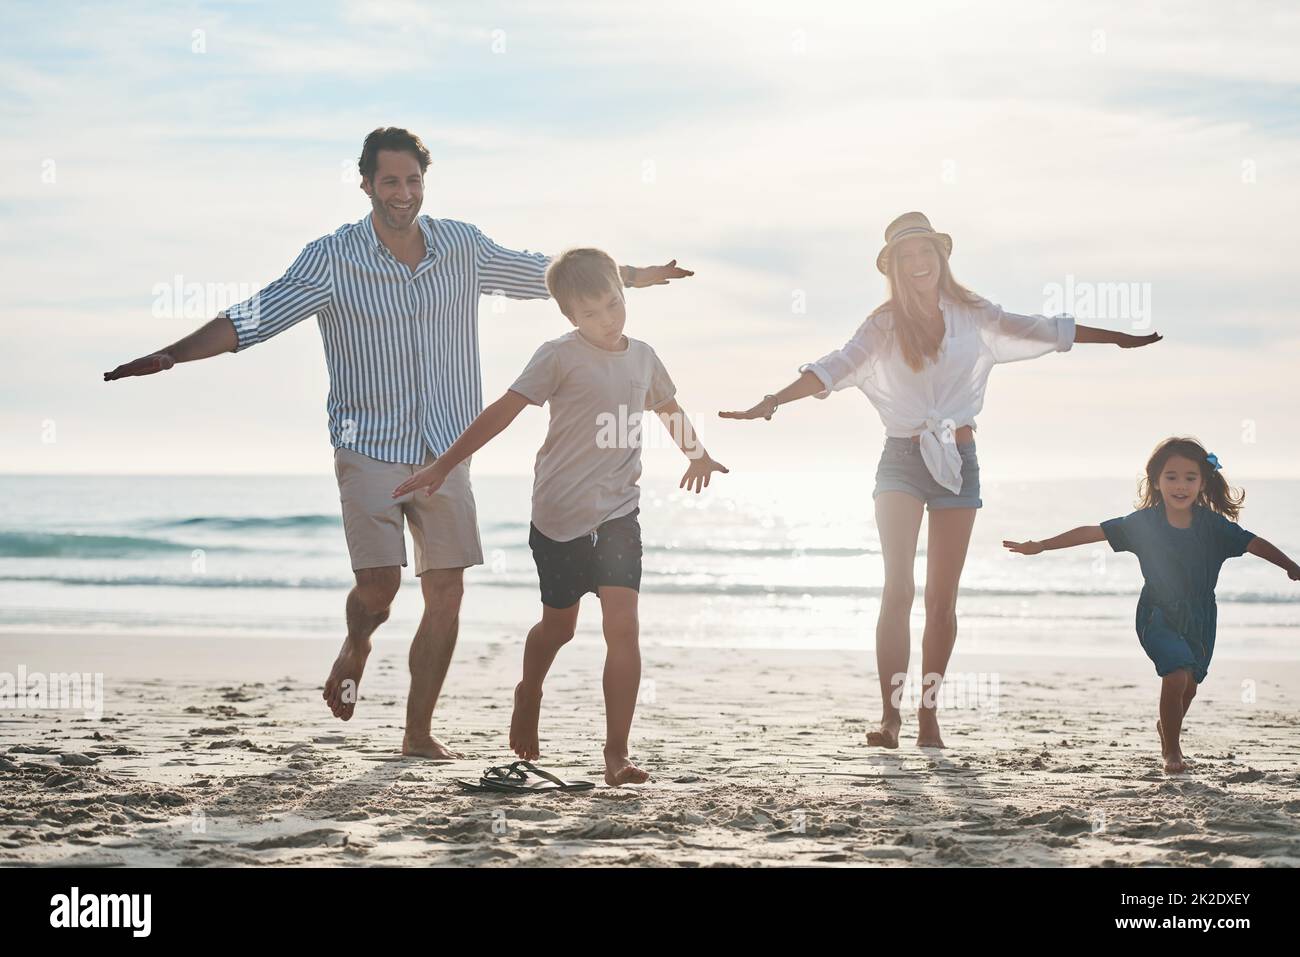 Es ist ein Rennen. Die ganze Aufnahme eines glücklichen jungen Paares, das mit seinen beiden Kindern einen verspielten Tag am Strand genießt. Stockfoto